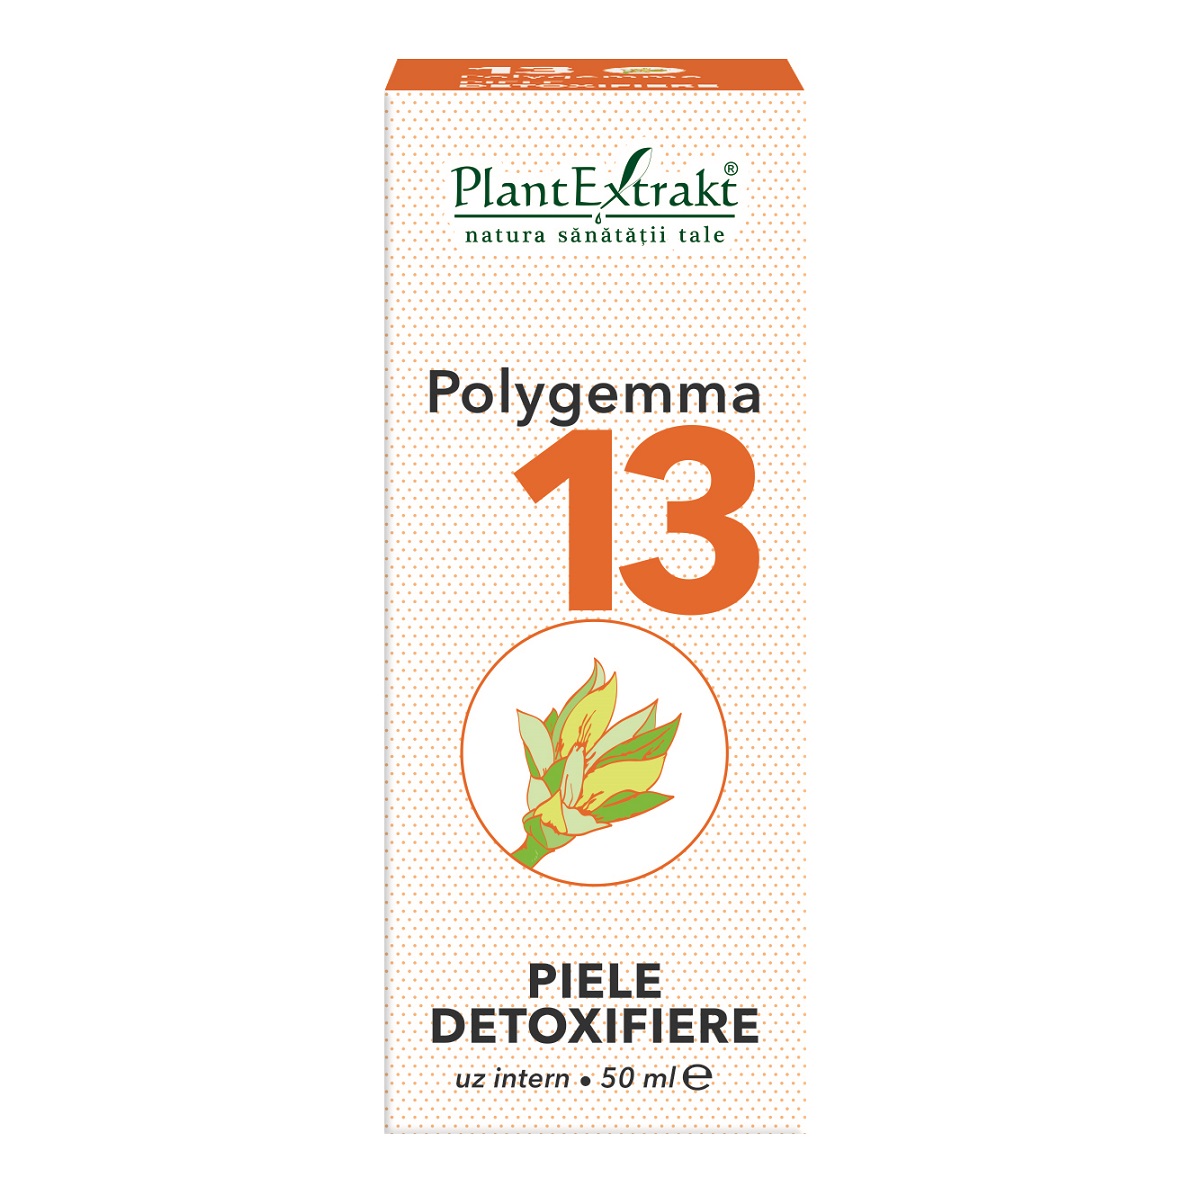 polygemma detoxifiere intestin)